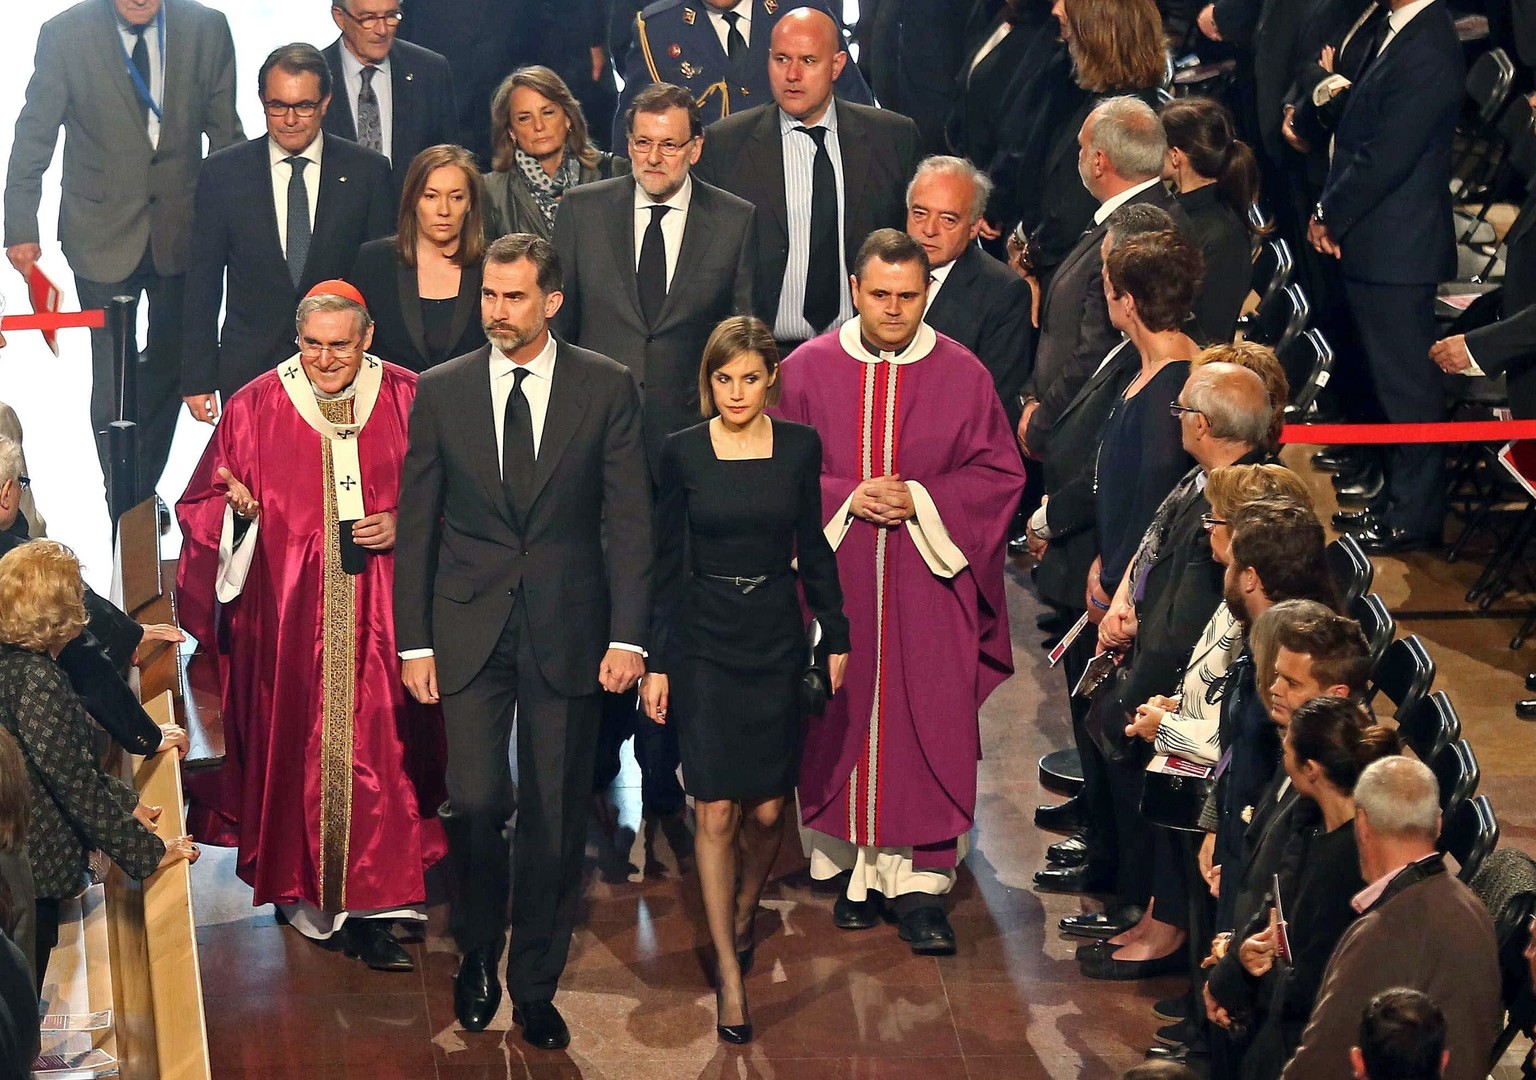 König Felipe VI. und Königin Letizia waren in der Sagrada Familia auch zugegen.&nbsp;